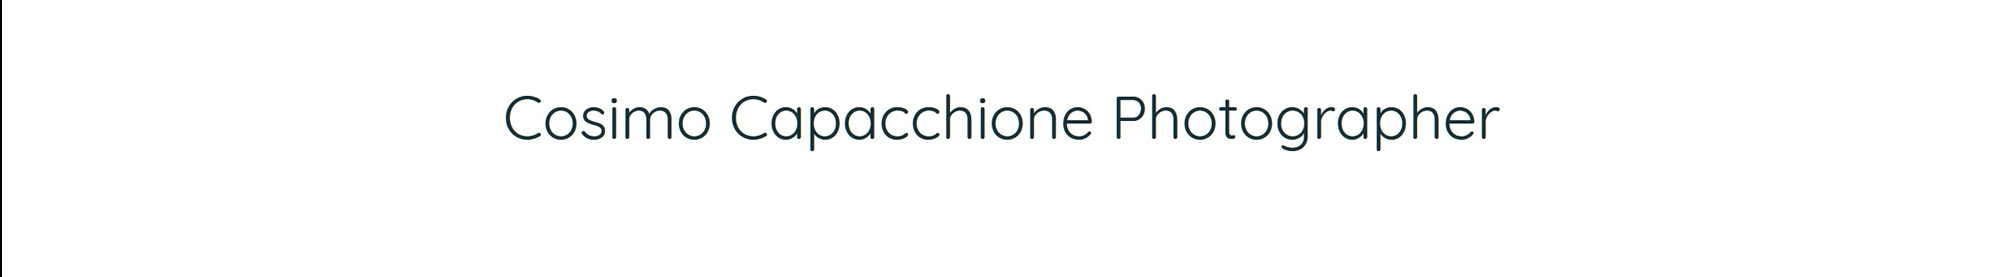 Cosimo Capacchione's profile banner